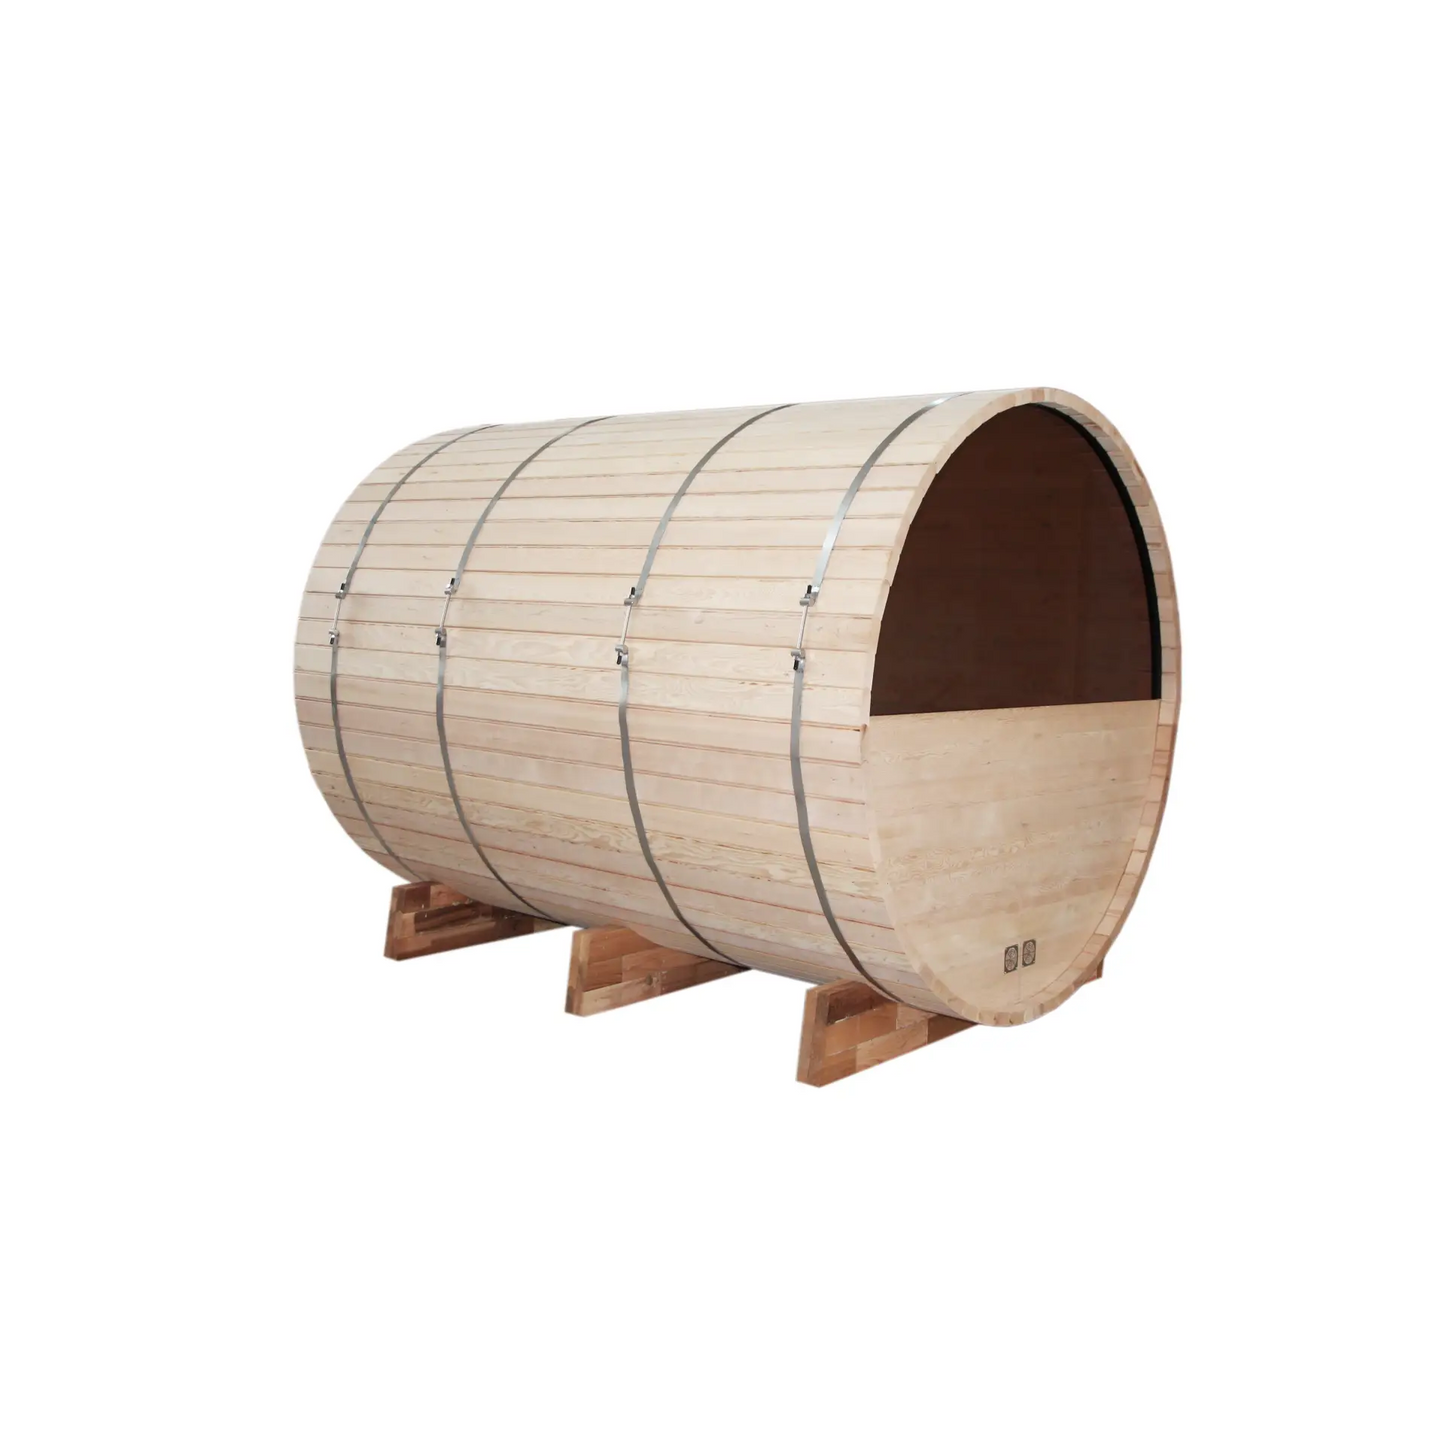 Outdoor Barrel Sauna - White Pine